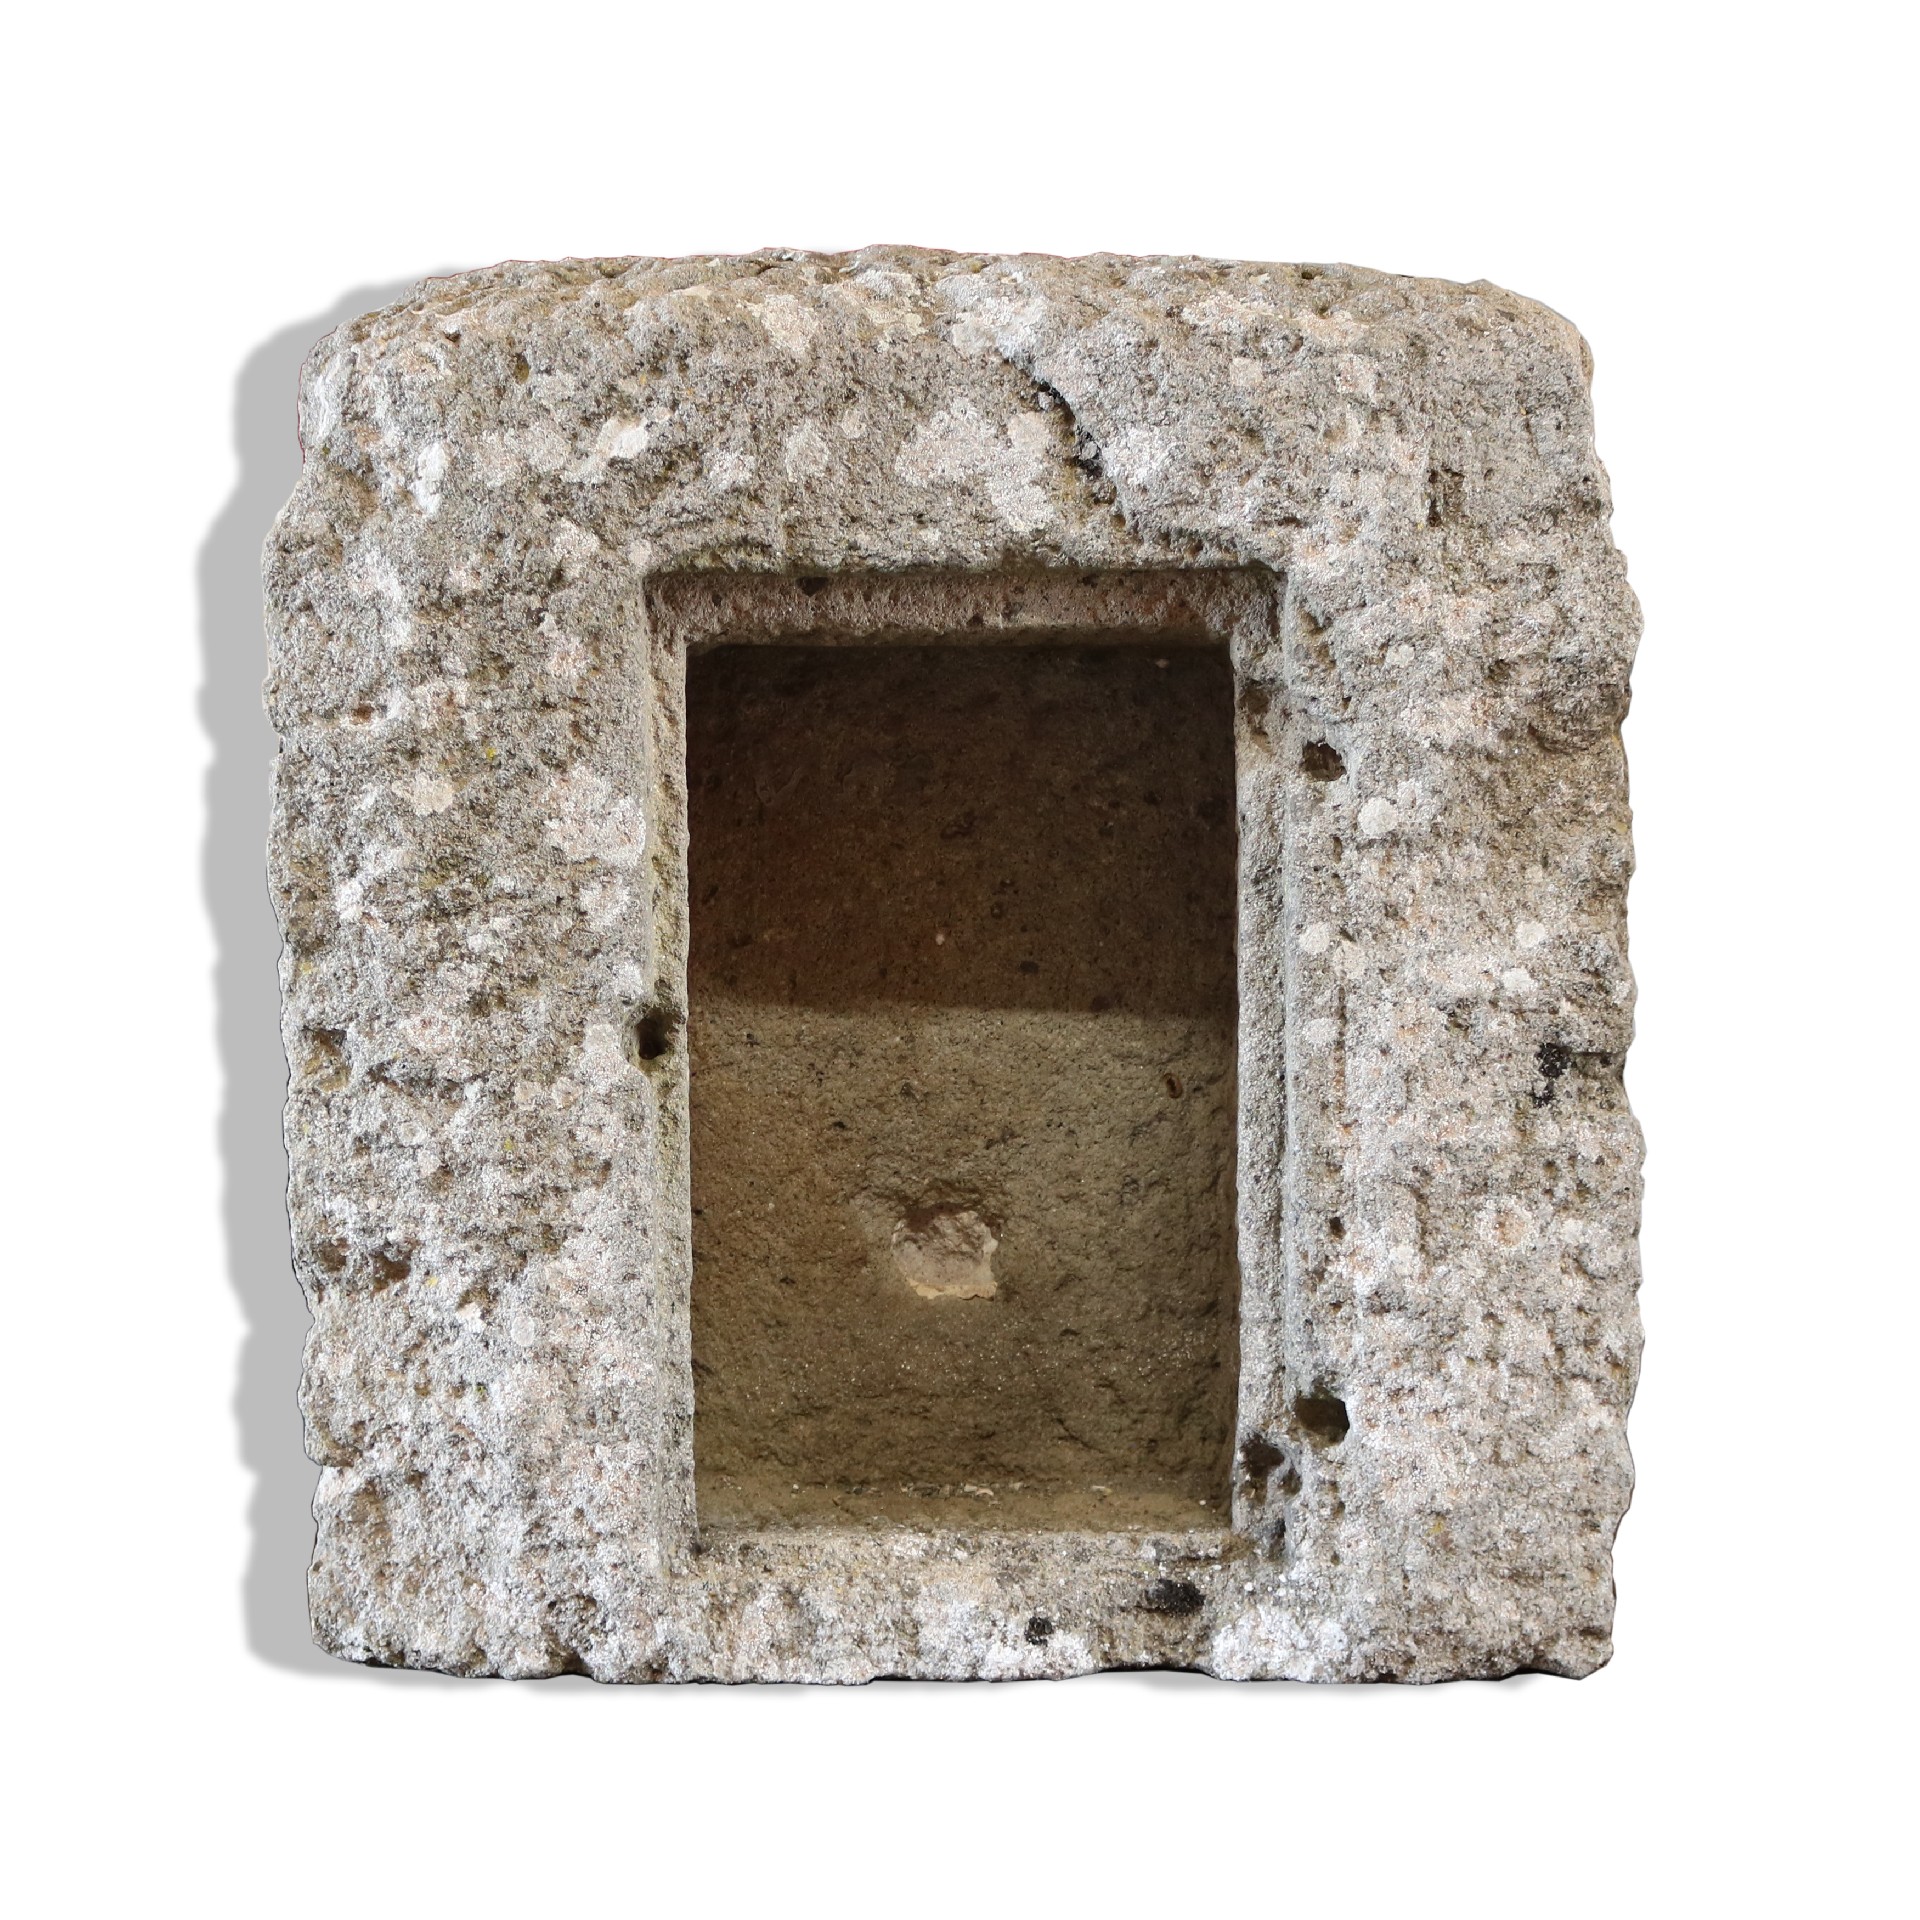 Antico tabernacolo in pietra. - Tabernacoli - Architettura - Prodotti - Antichità Fiorillo